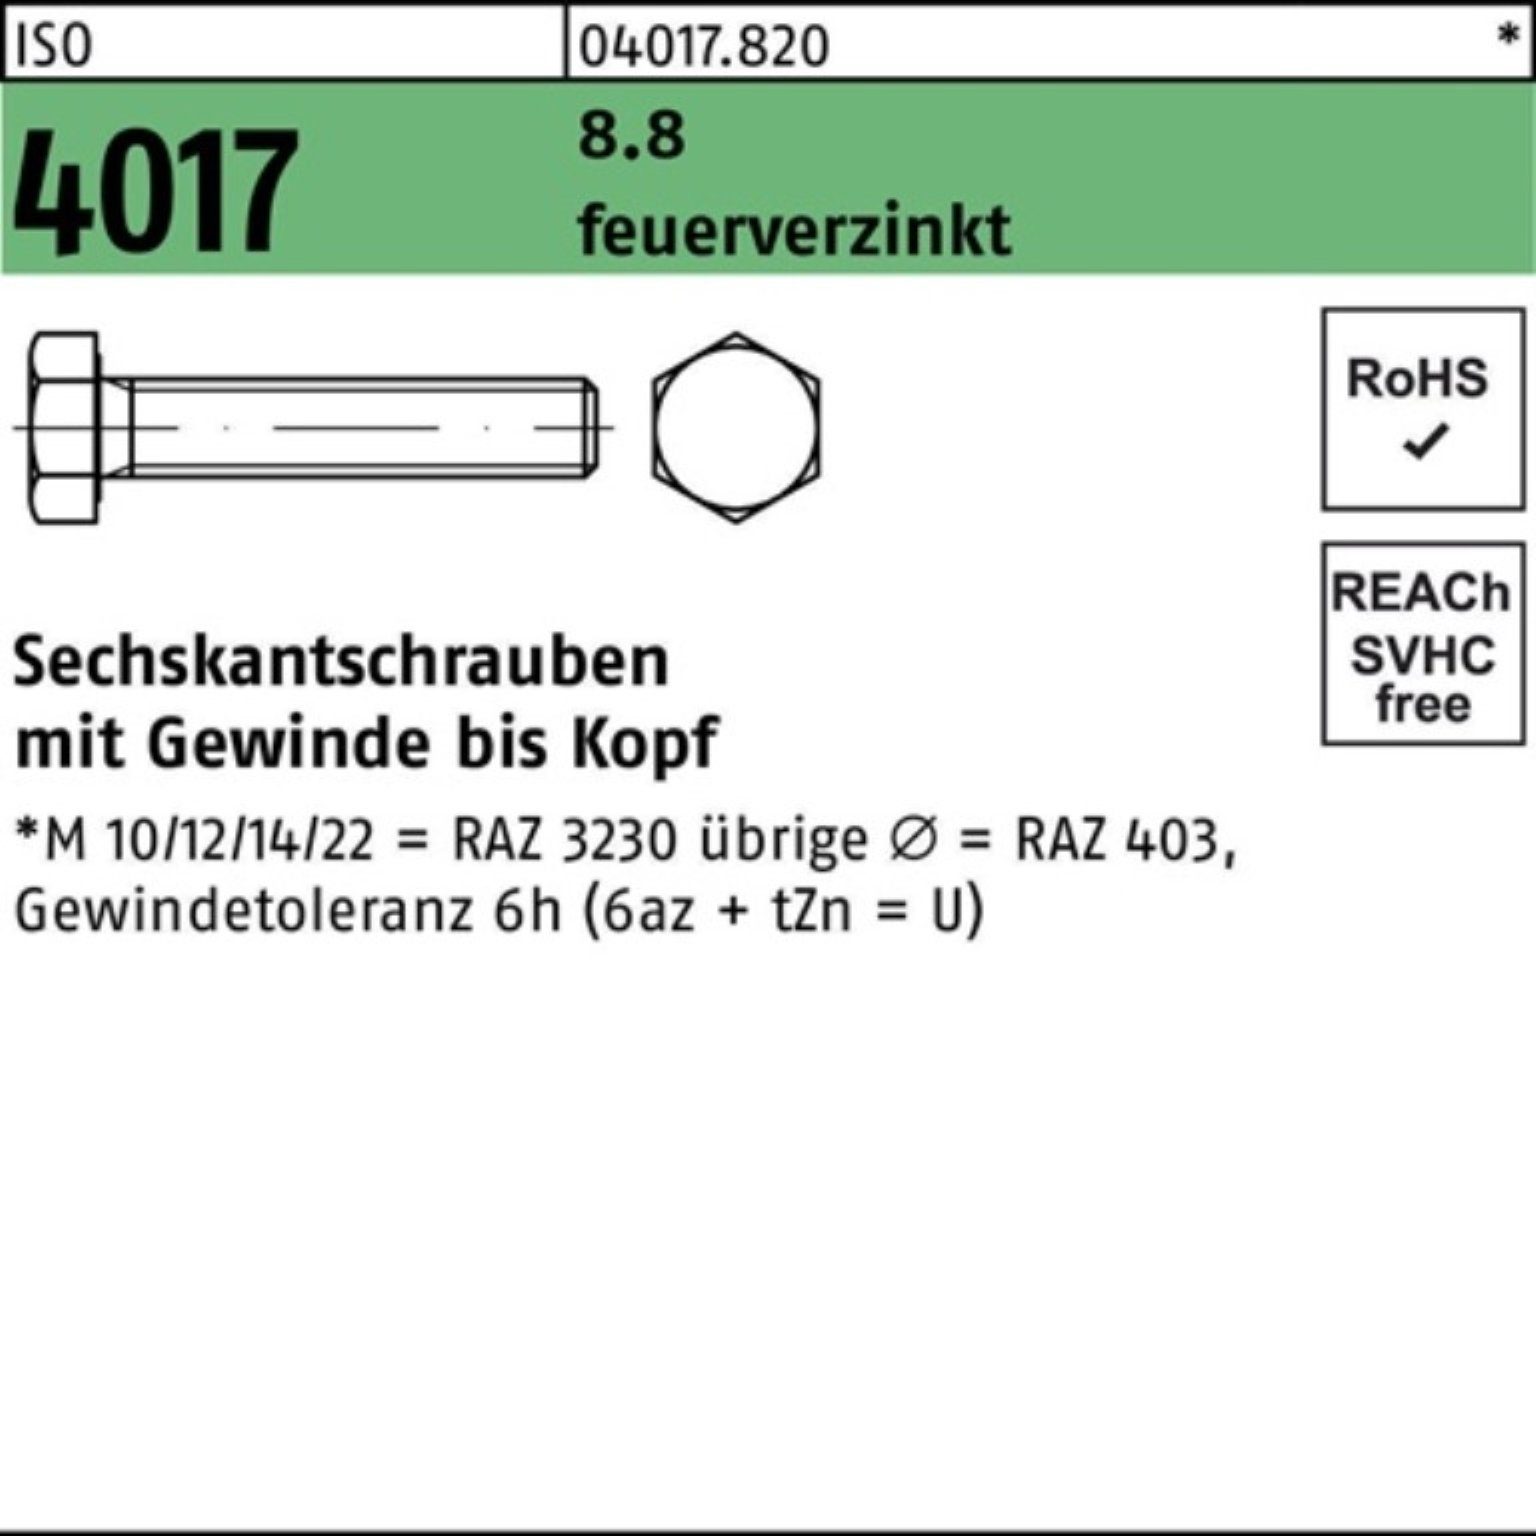 Bufab Sechskantschraube M12x 100 Sechskantschraube VG 16 4017 ISO St 100er Pack feuerverz. 8.8